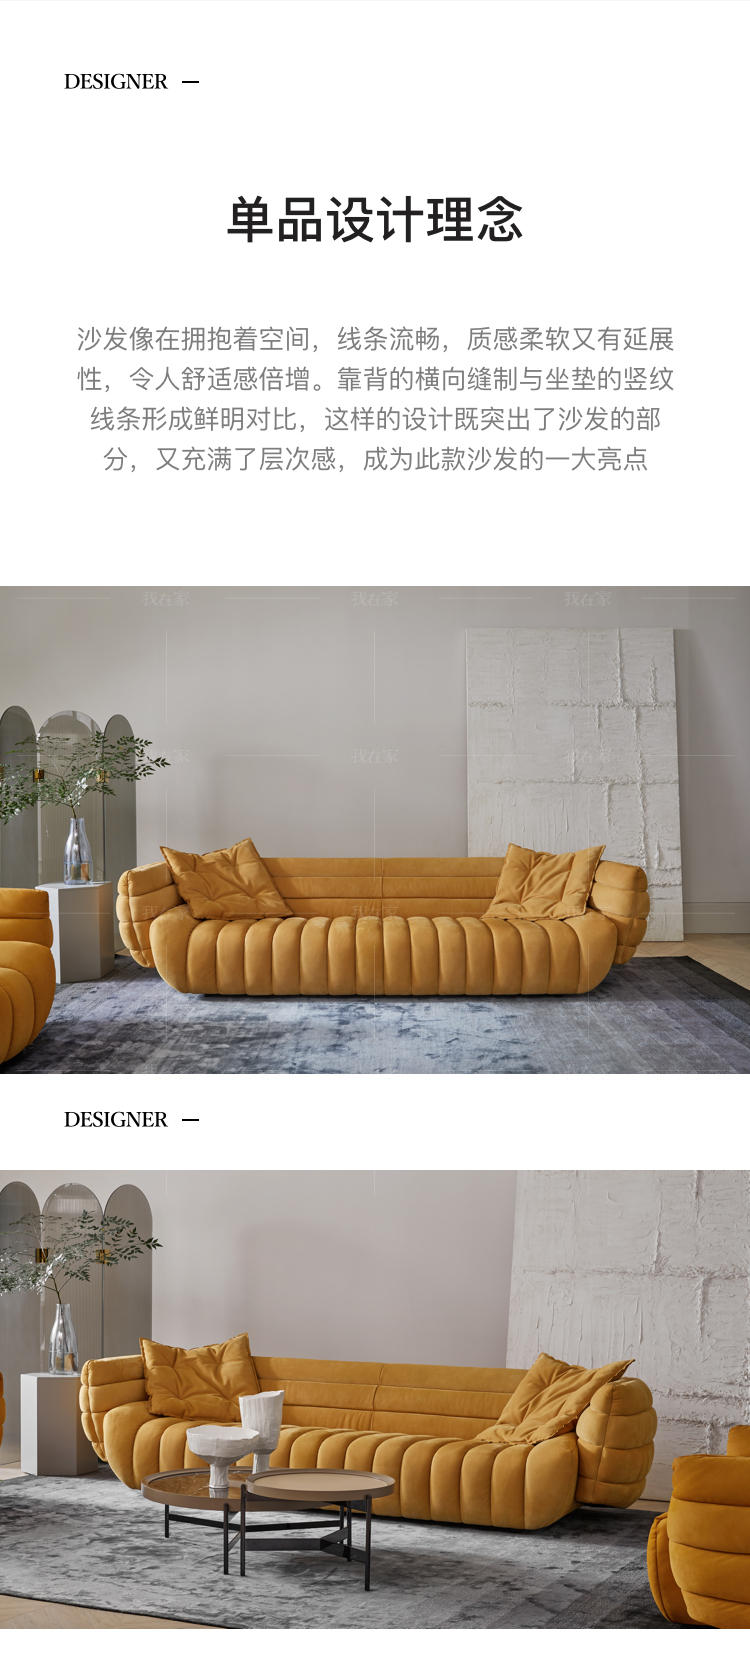 意式极简风格汽艇真皮沙发的家具详细介绍